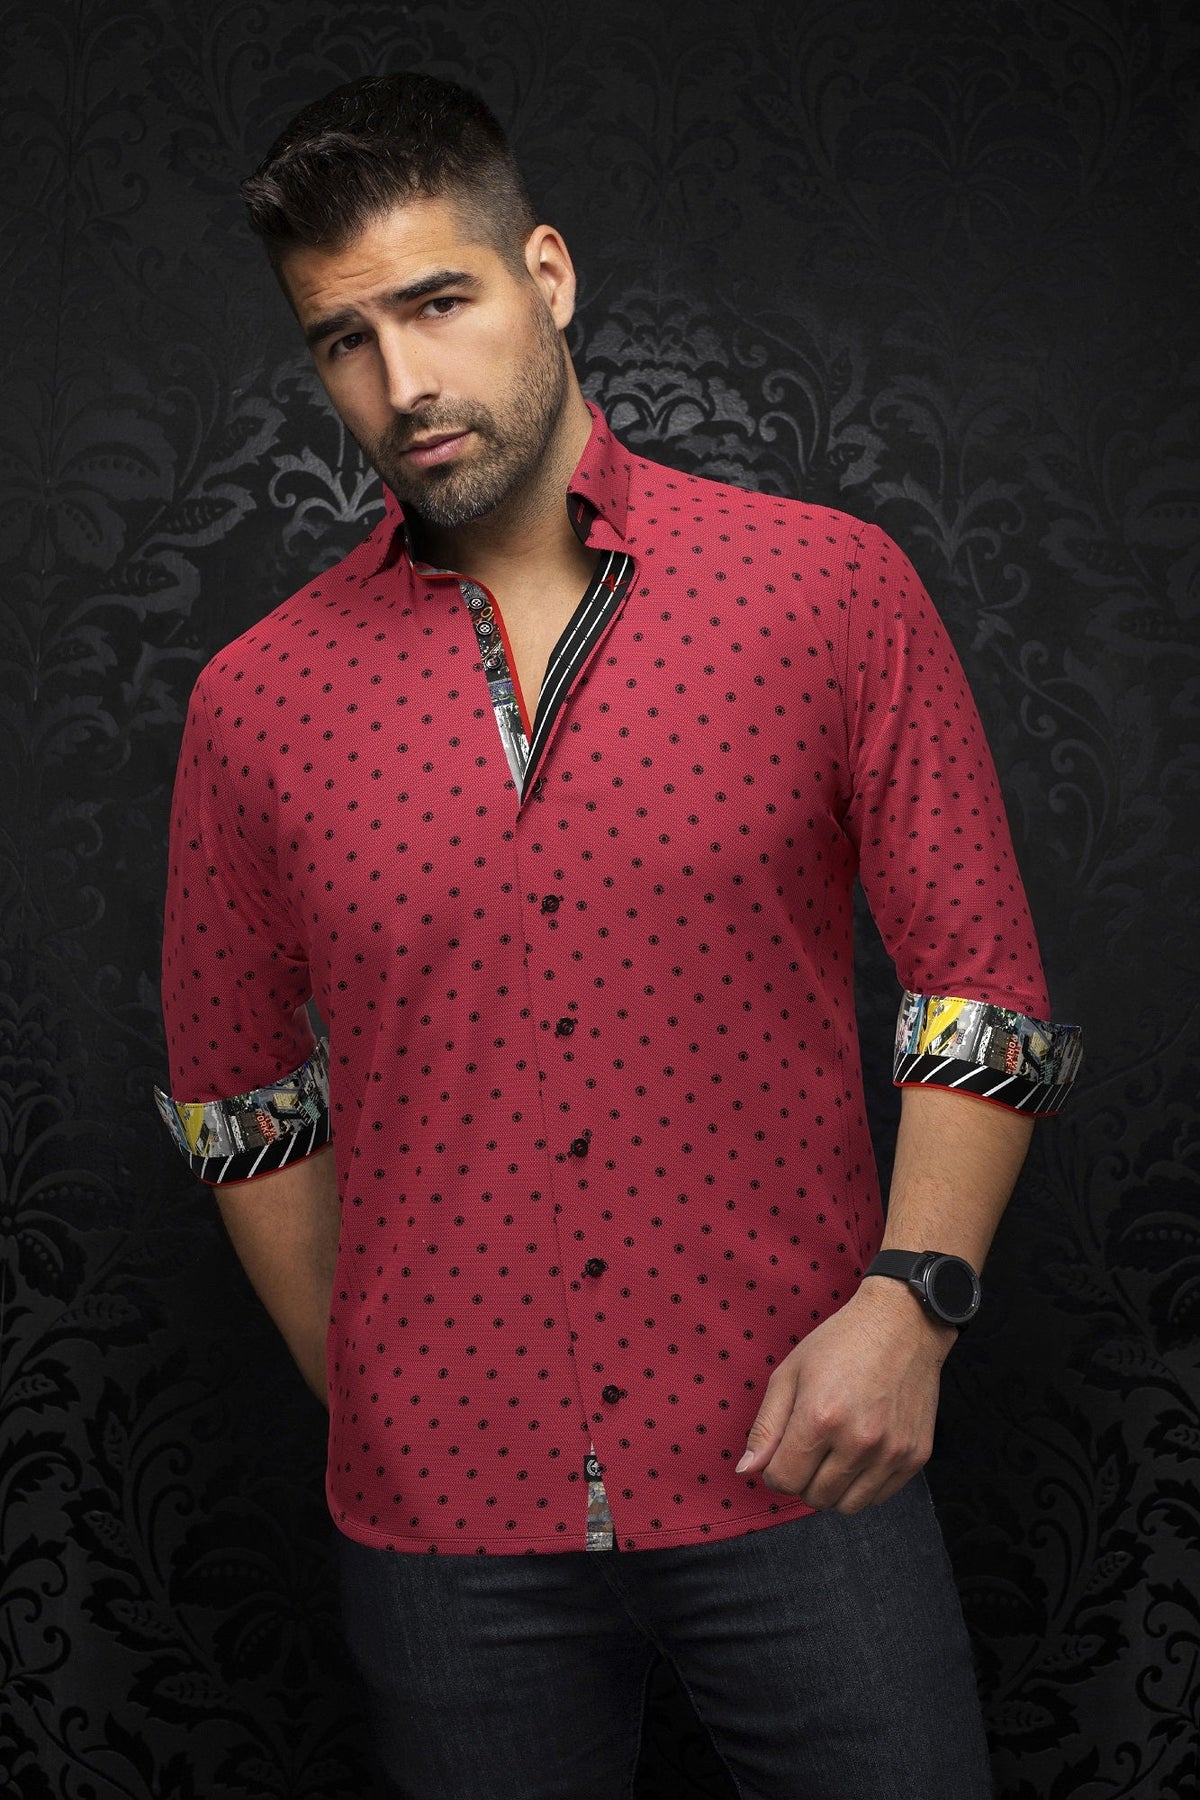 Chemise manches longues pour homme par Au Noir | NEUMANN Rouge | Machemise.ca, inventaire complet de la marque Au Noir